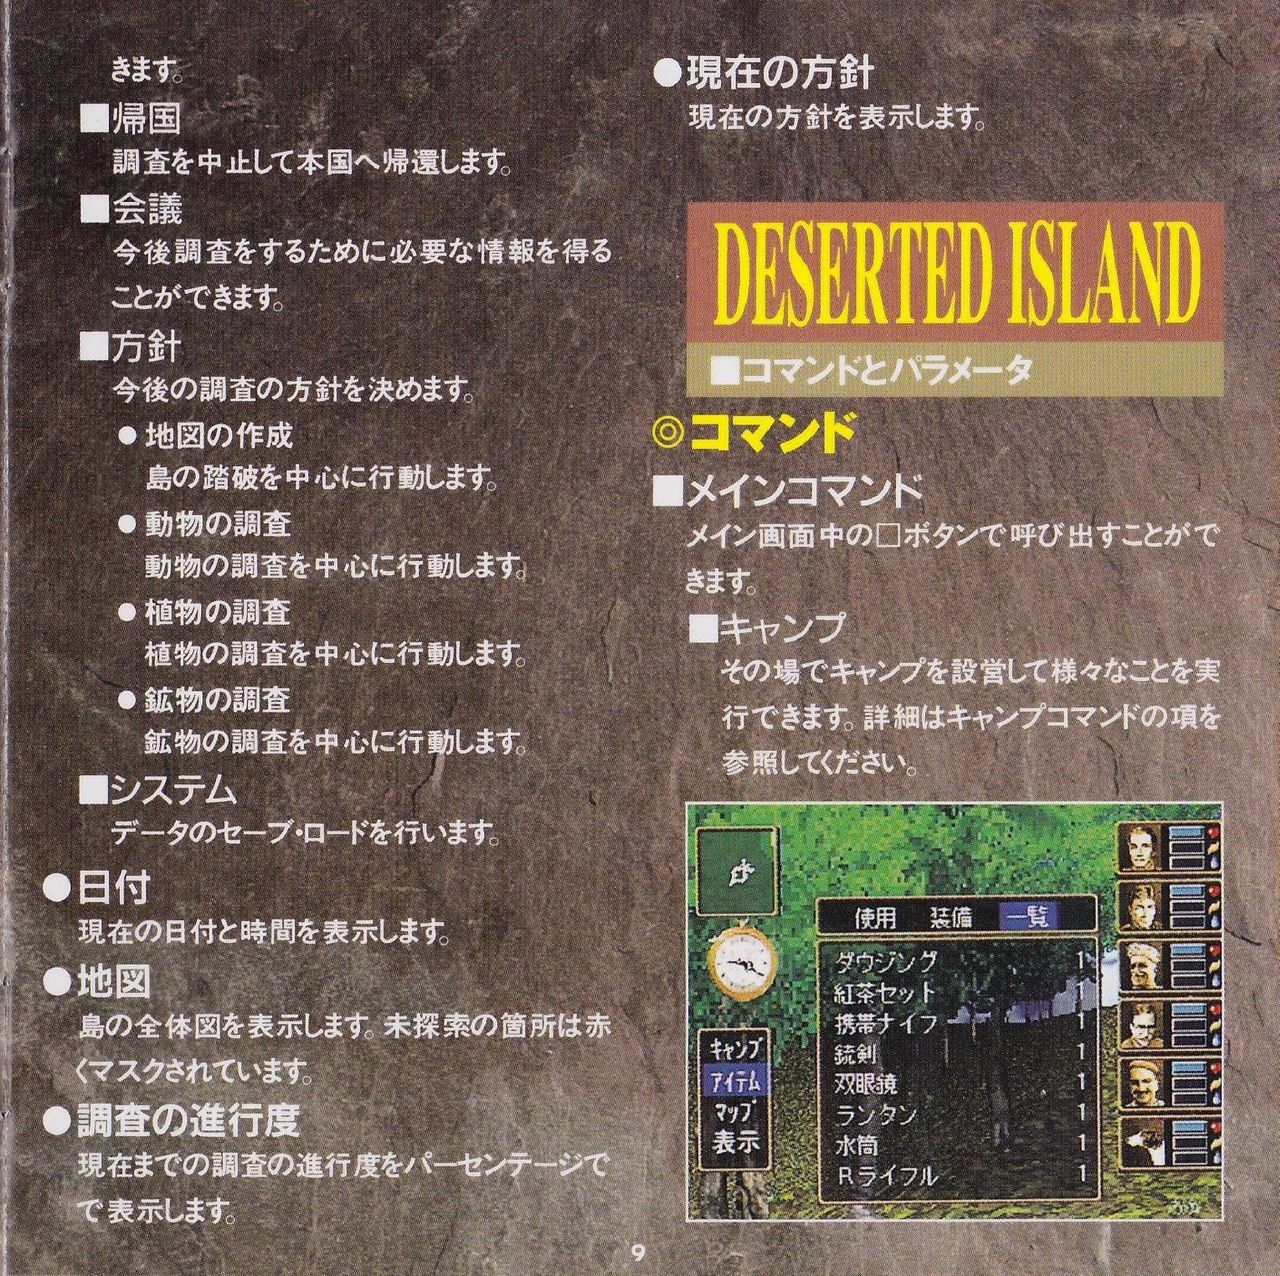 [KSS] Deserted Island - Manual 13